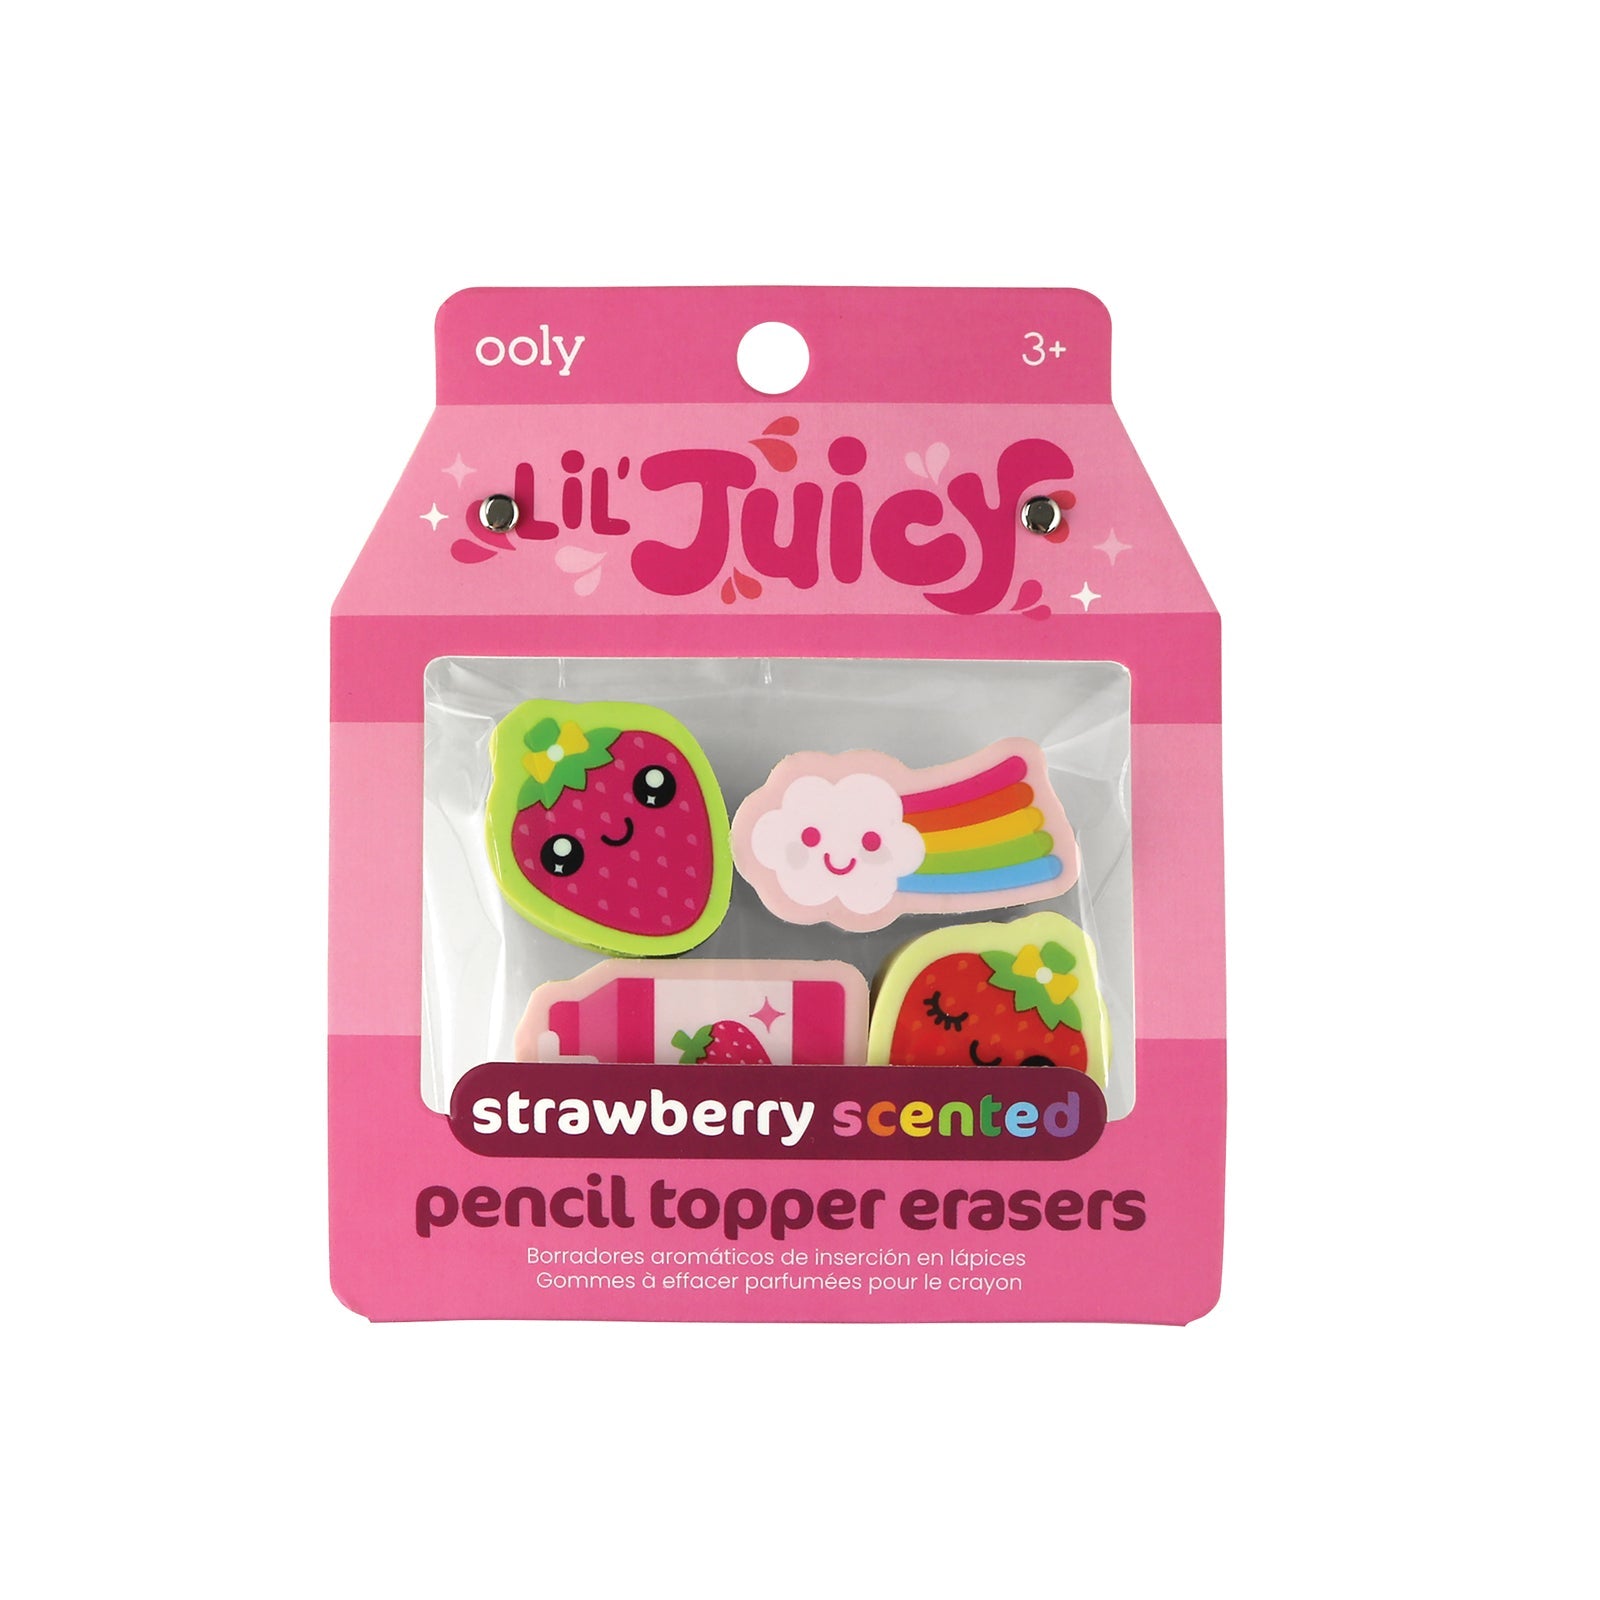 Ooly Erdbeerduft-Pencil-Topper: Zauberhafte Schreibbegleiter voller Frische und Genuss! 🍓✨